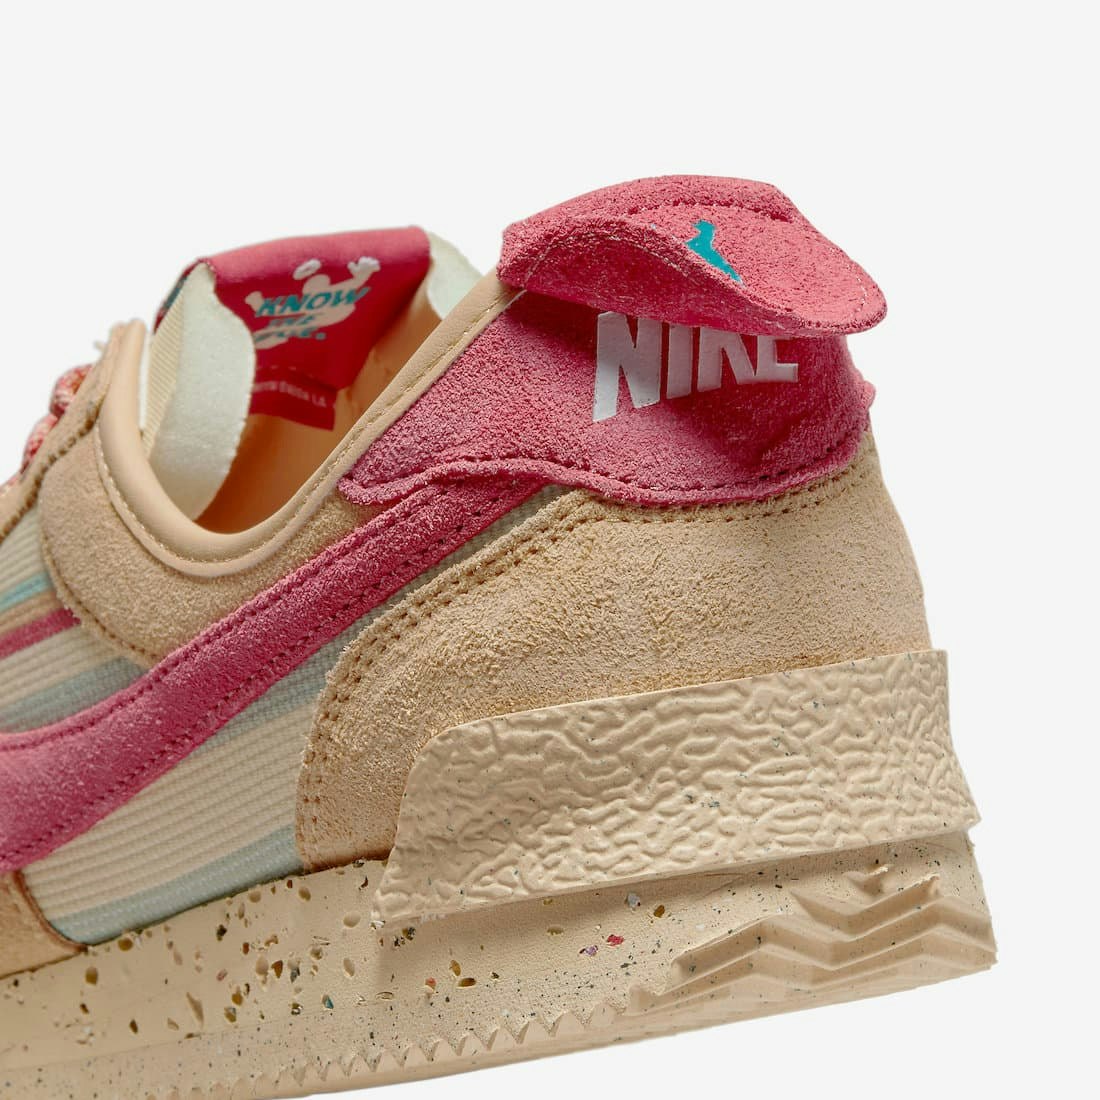 Union x Nike Cortez "Pink Clay"